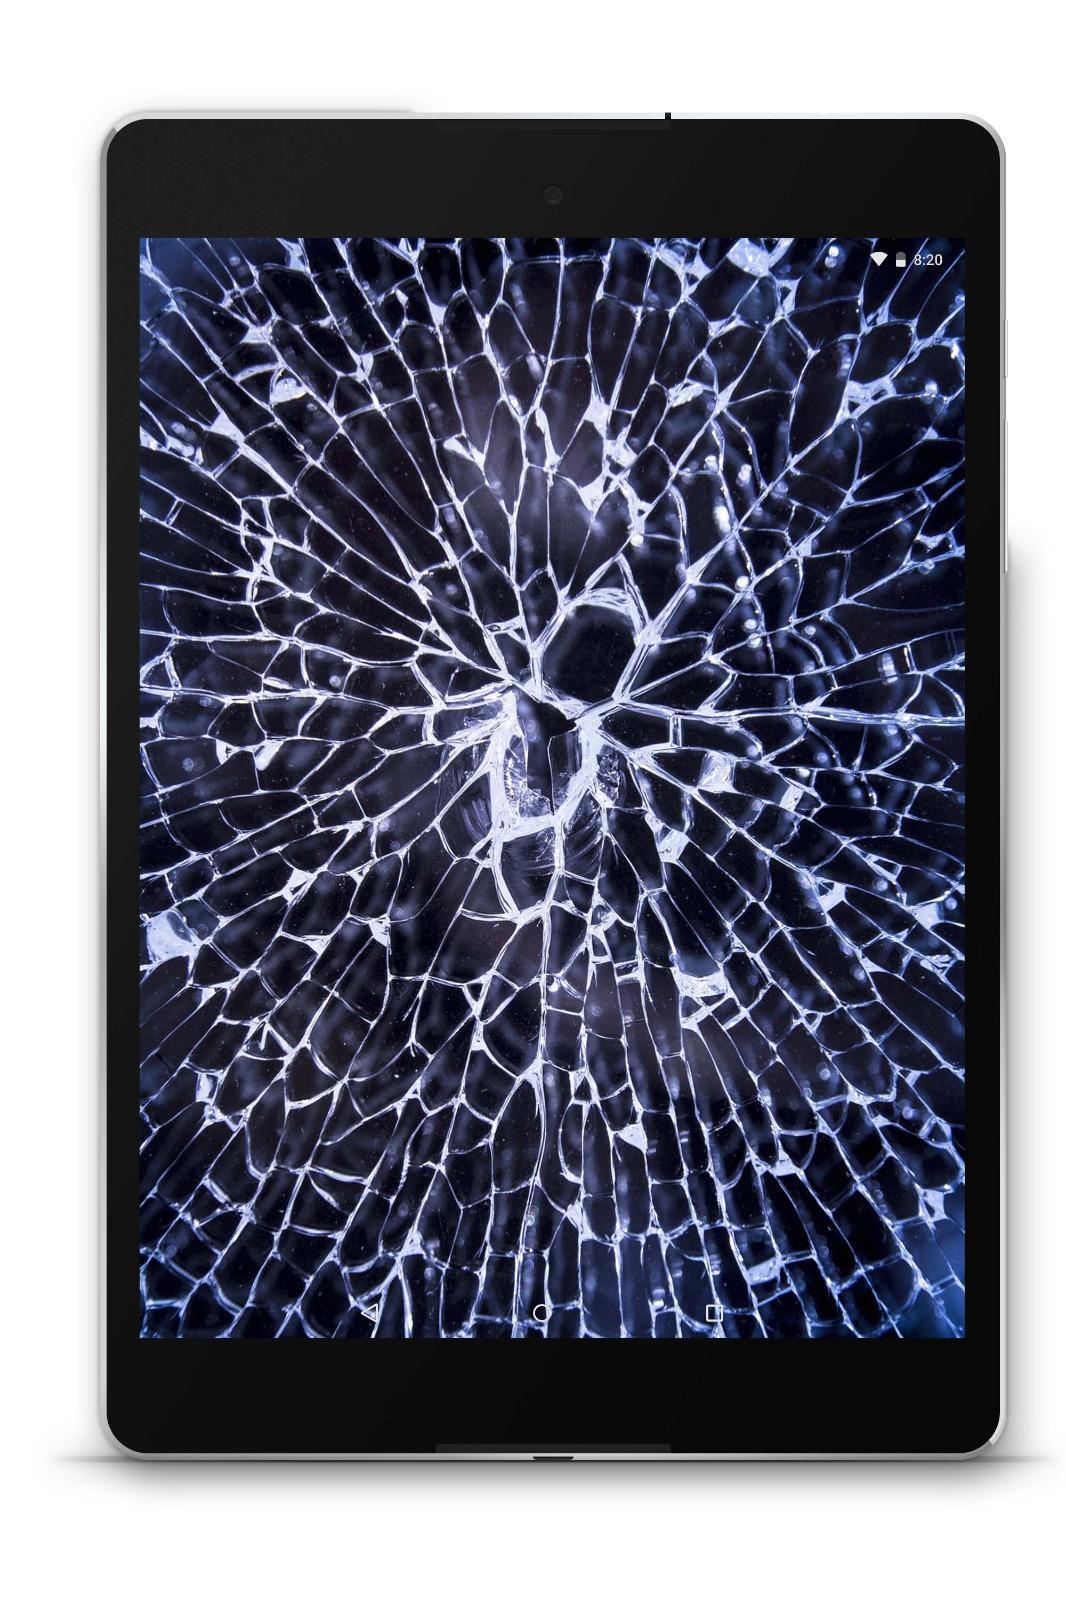 Android 用の 破損したガラスの壁紙 Apk をダウンロード